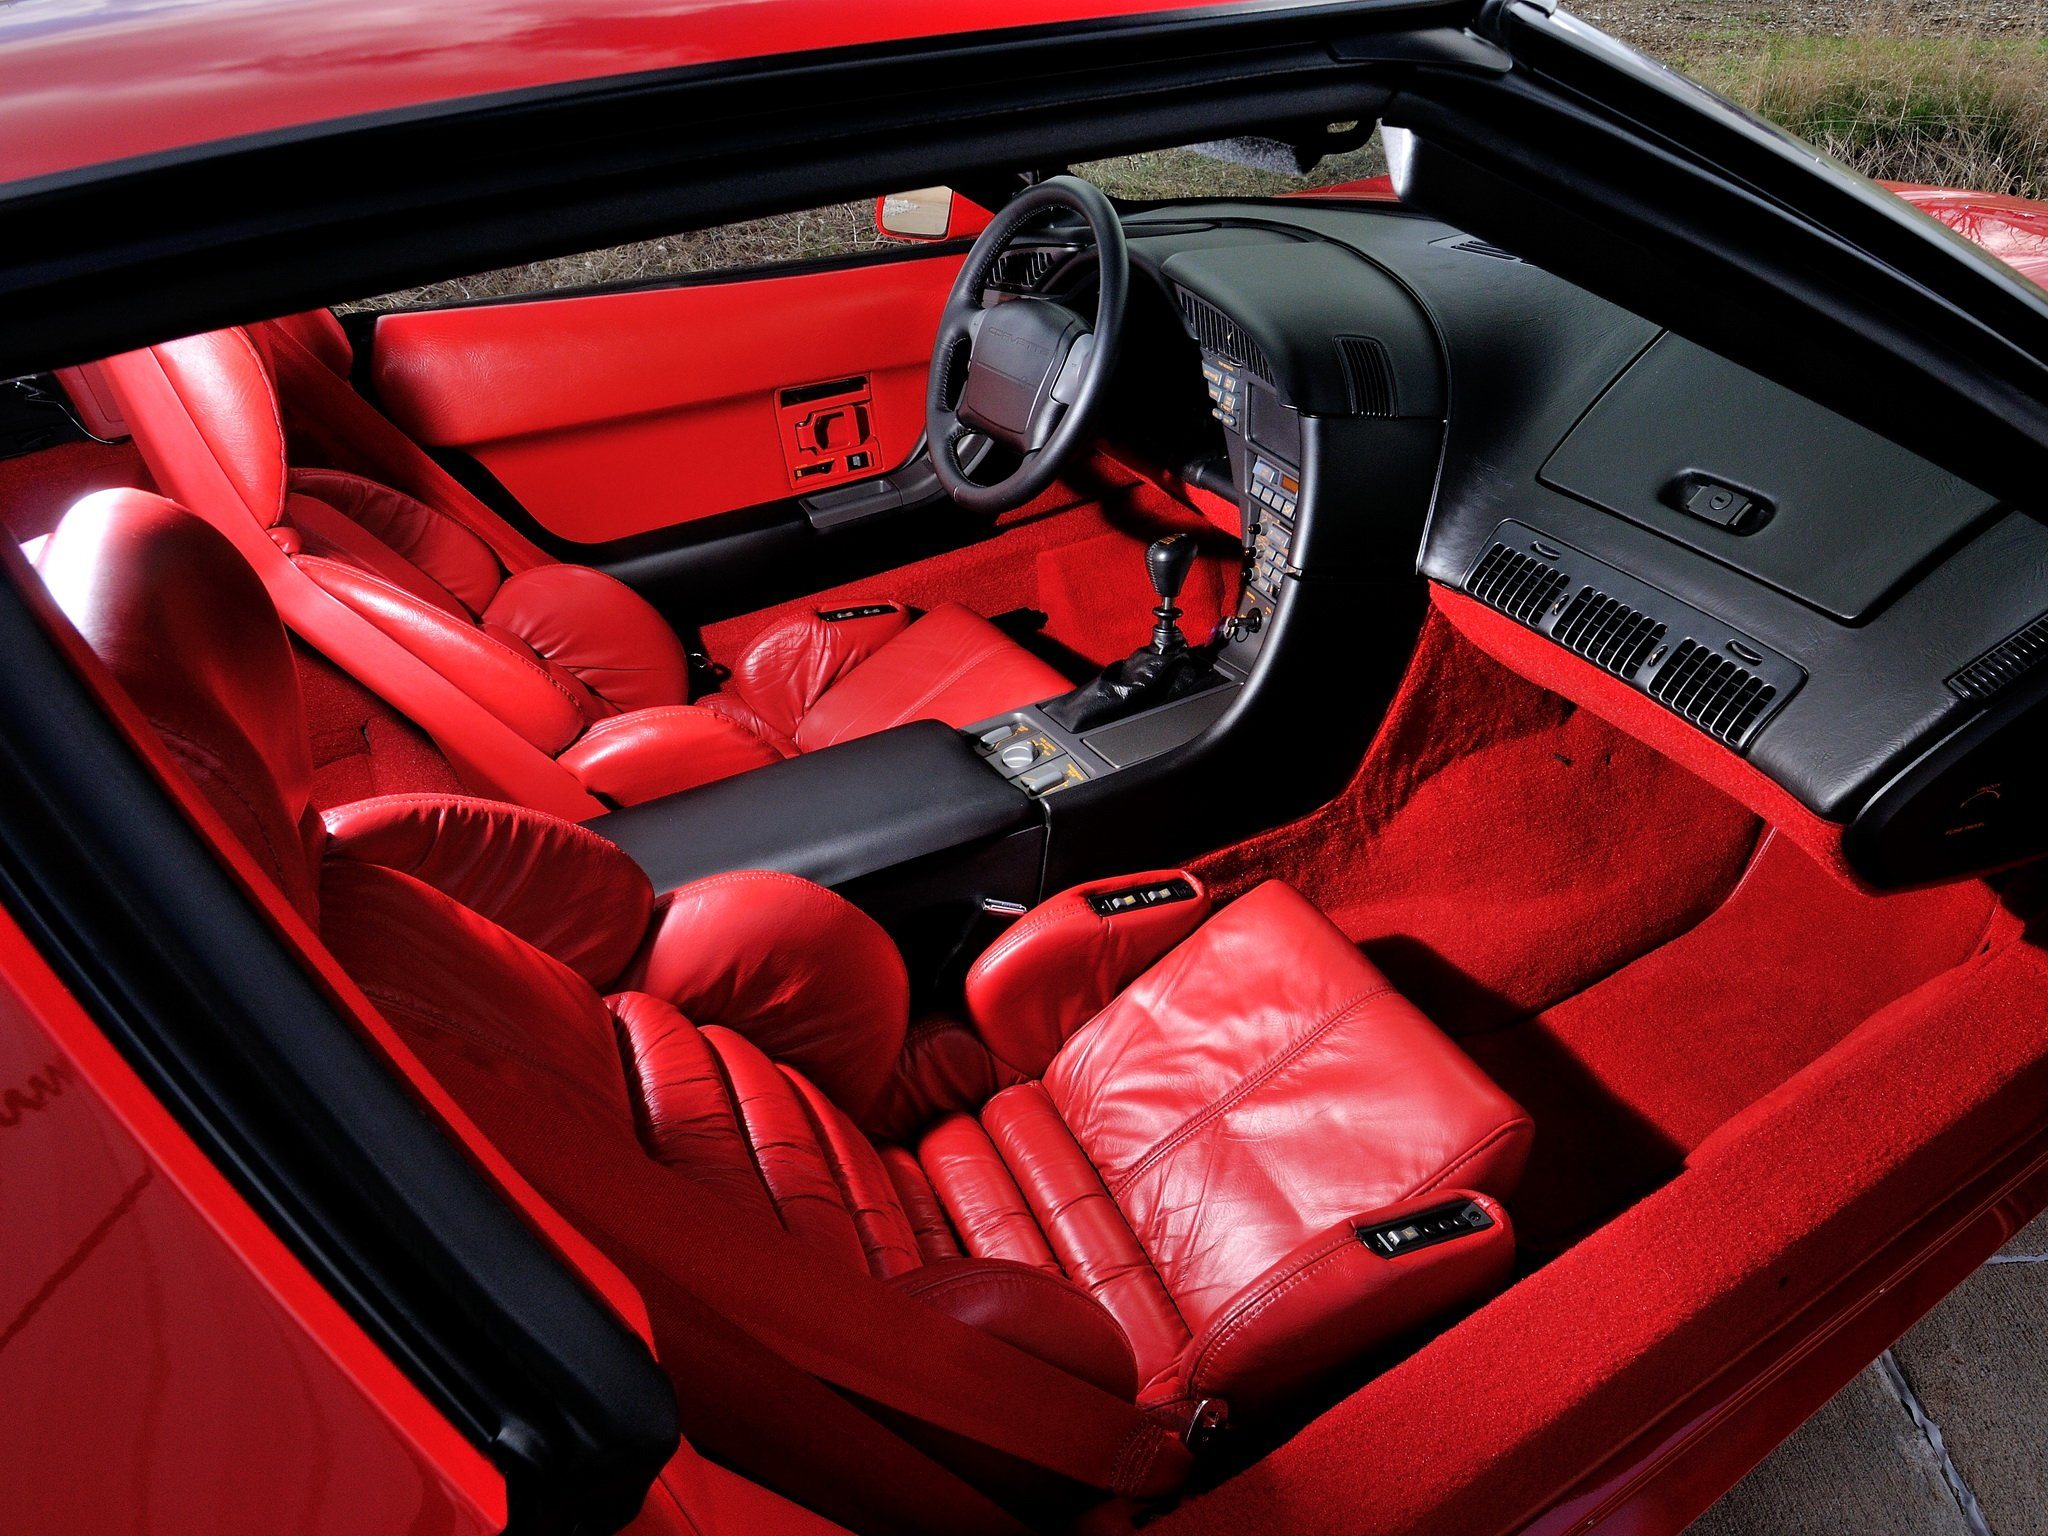 1990 Corvette Interior.